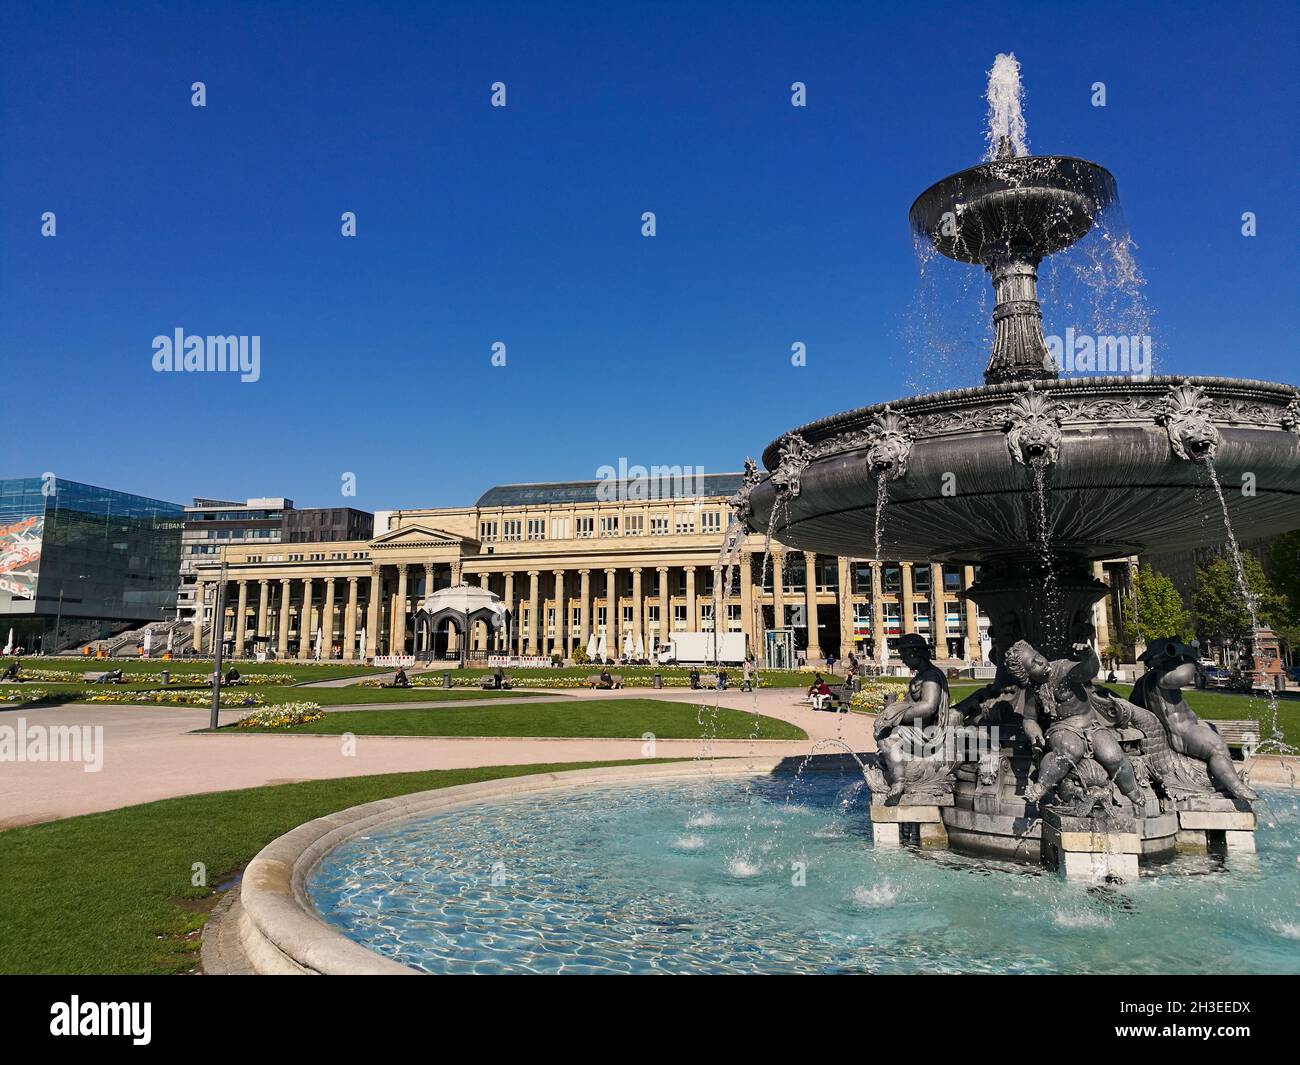 STOCCARDA, GERMANIA - 26 aprile 2021: Schlossplatz, centro città e fontana con acqua pulita, piazza storica Foto Stock